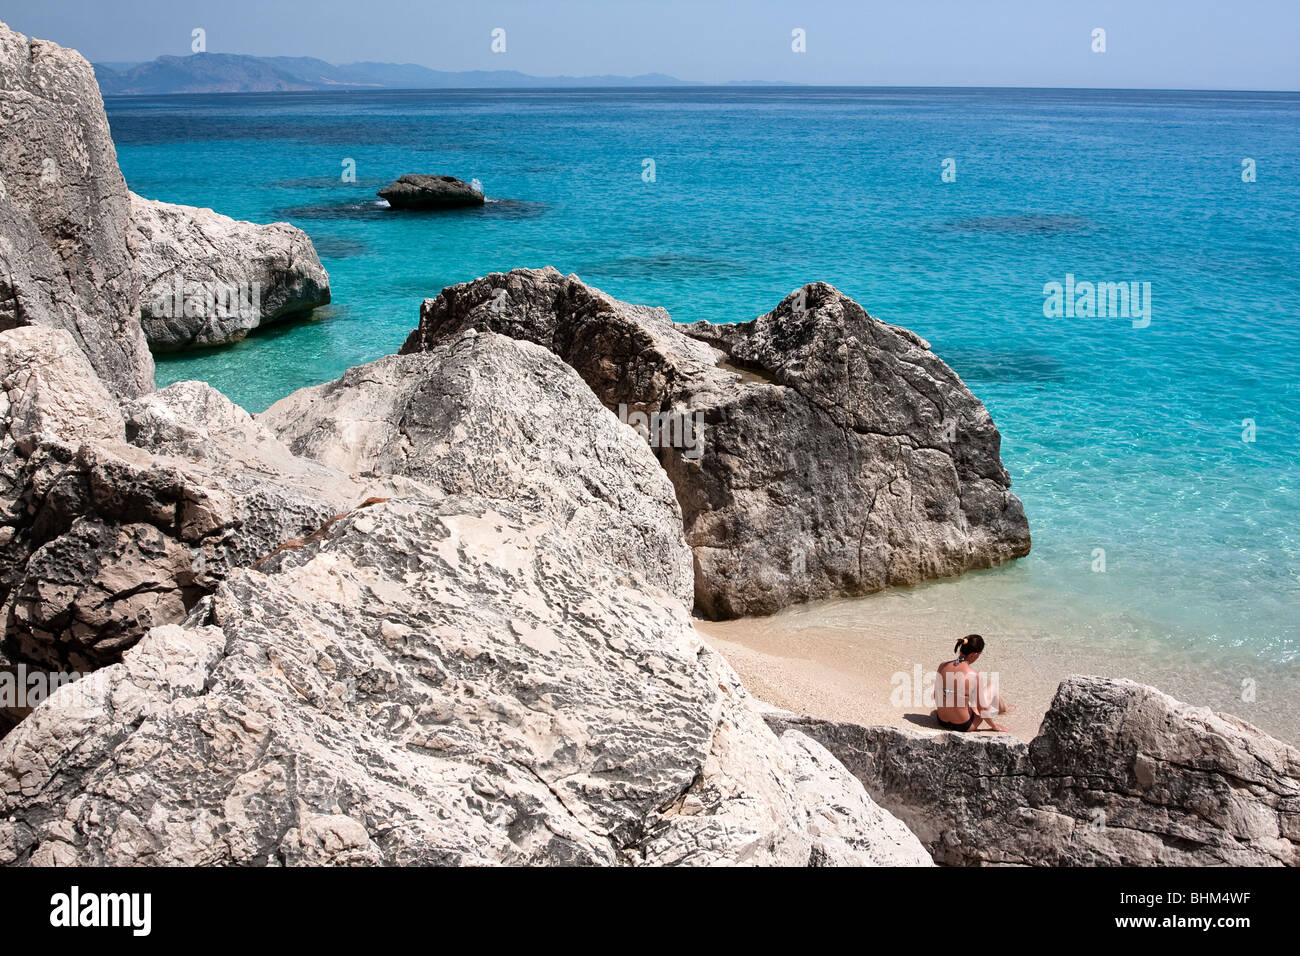 Alloggiamento vuoto Cala Goloritze Beach, l'isola di Sardegna Italia. Blu chiaro in acqua Cala Goloritzè Bay, Mar Mediterraneo. Foto Stock